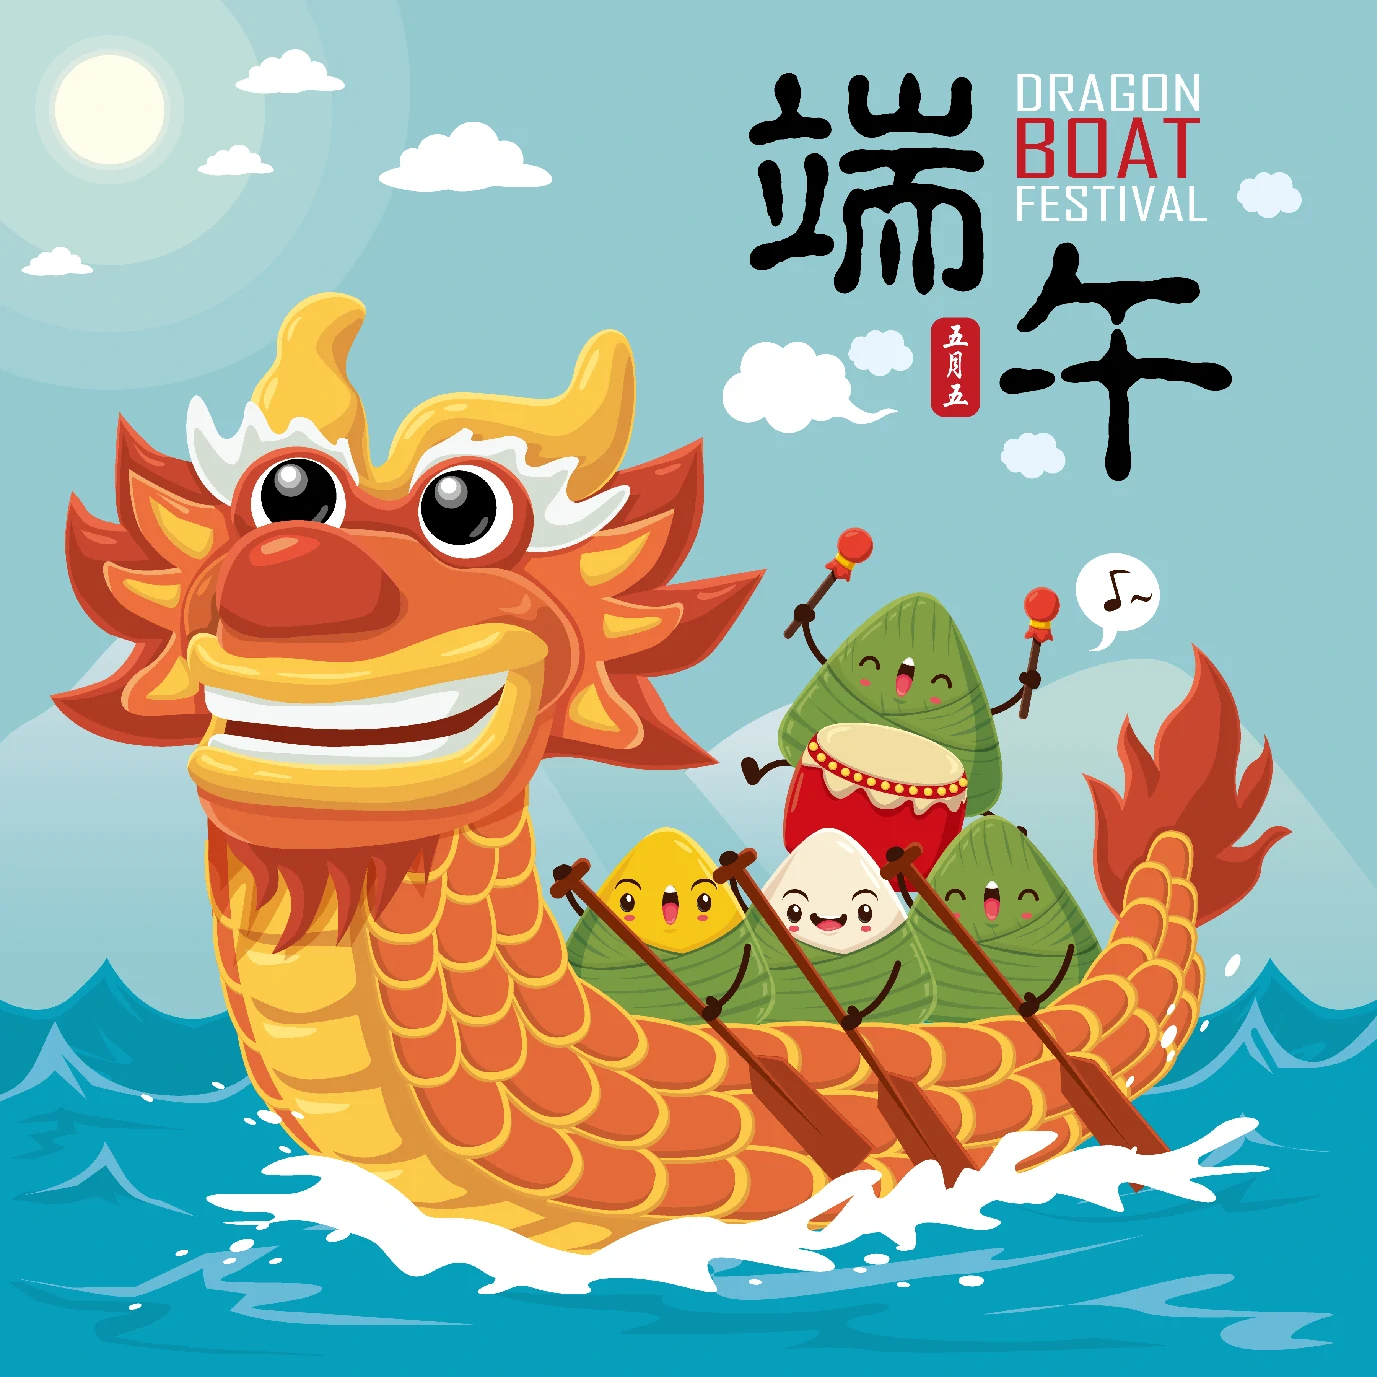 中国传统节日卡通手绘端午节赛龙舟粽子插画海报AI矢量设计素材【037】